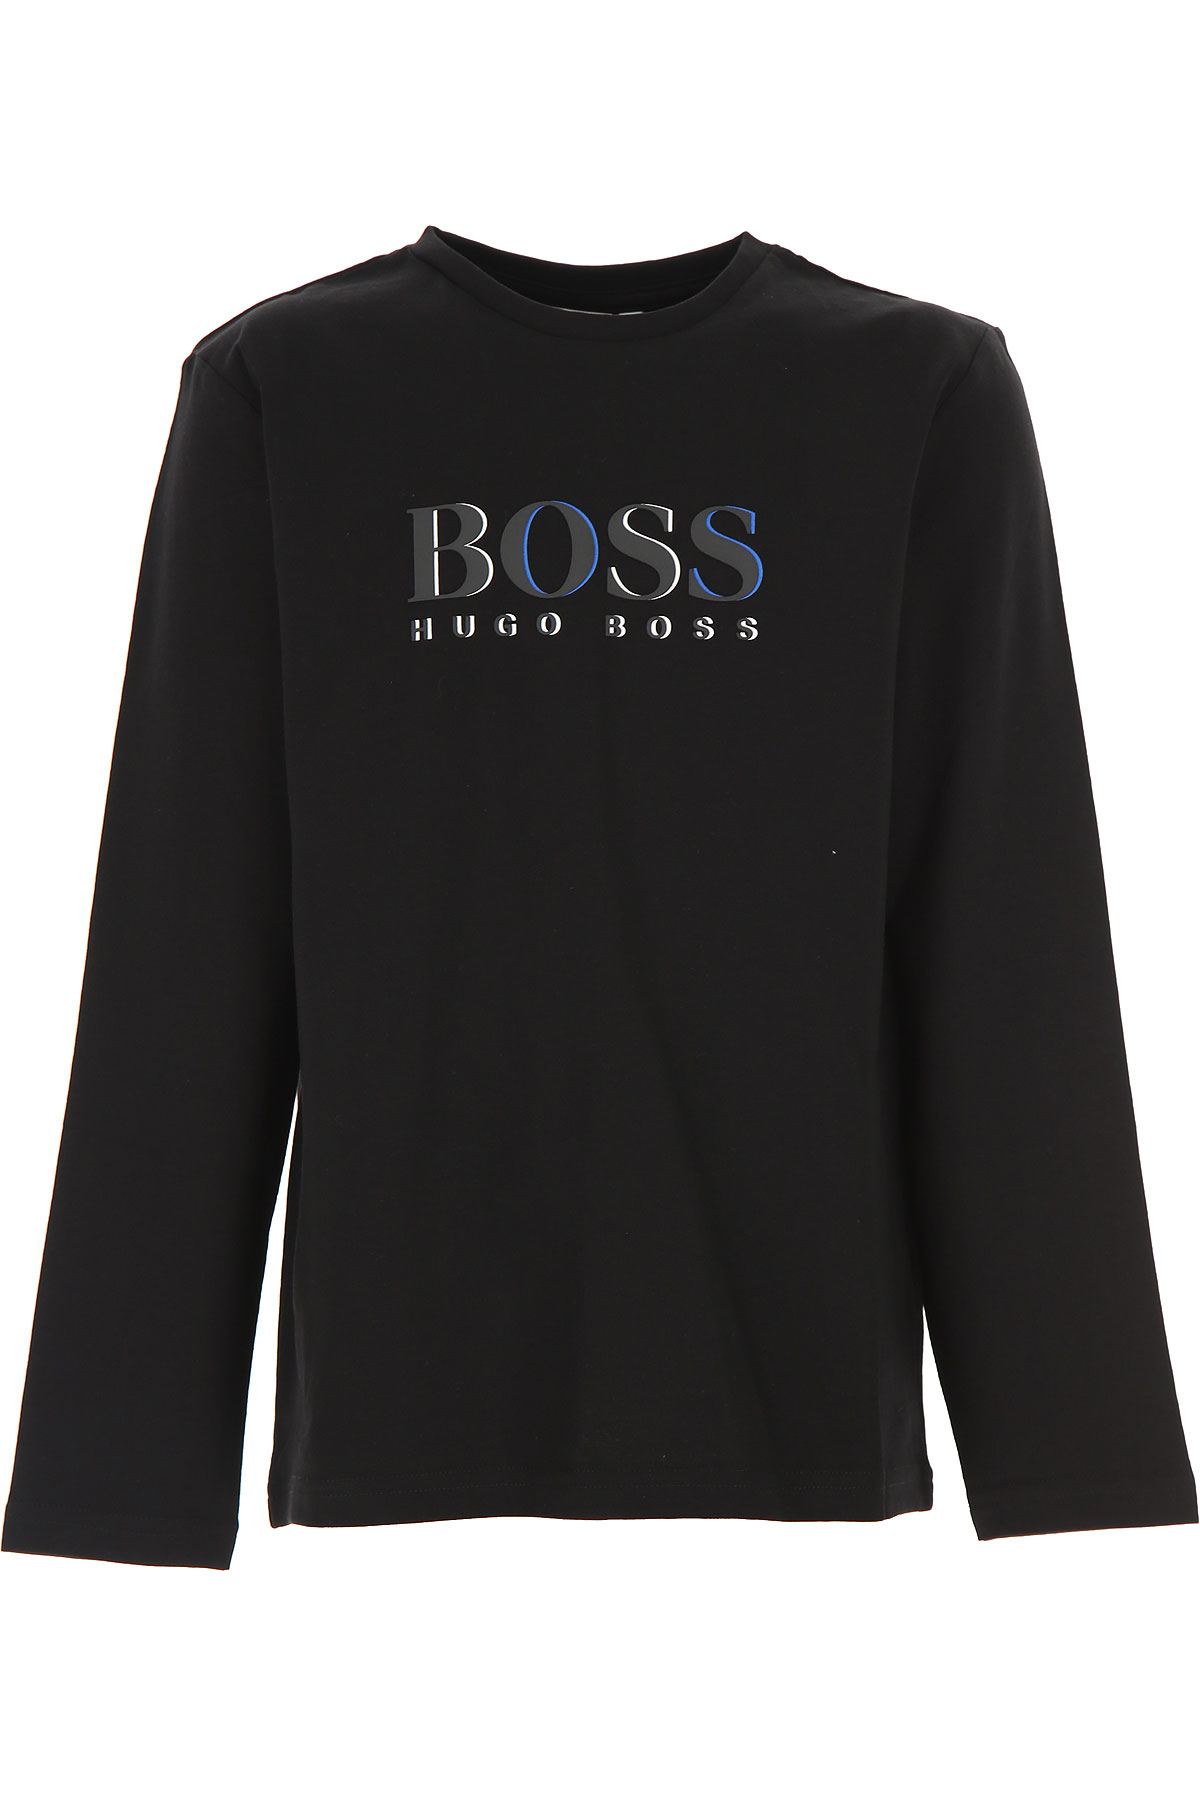 Hugo Boss Kinder T-Shirt für Jungen Günstig im Sale, Schwarz, Baumwolle, 2017, 10Y 12Y 16Y 6Y 8Y